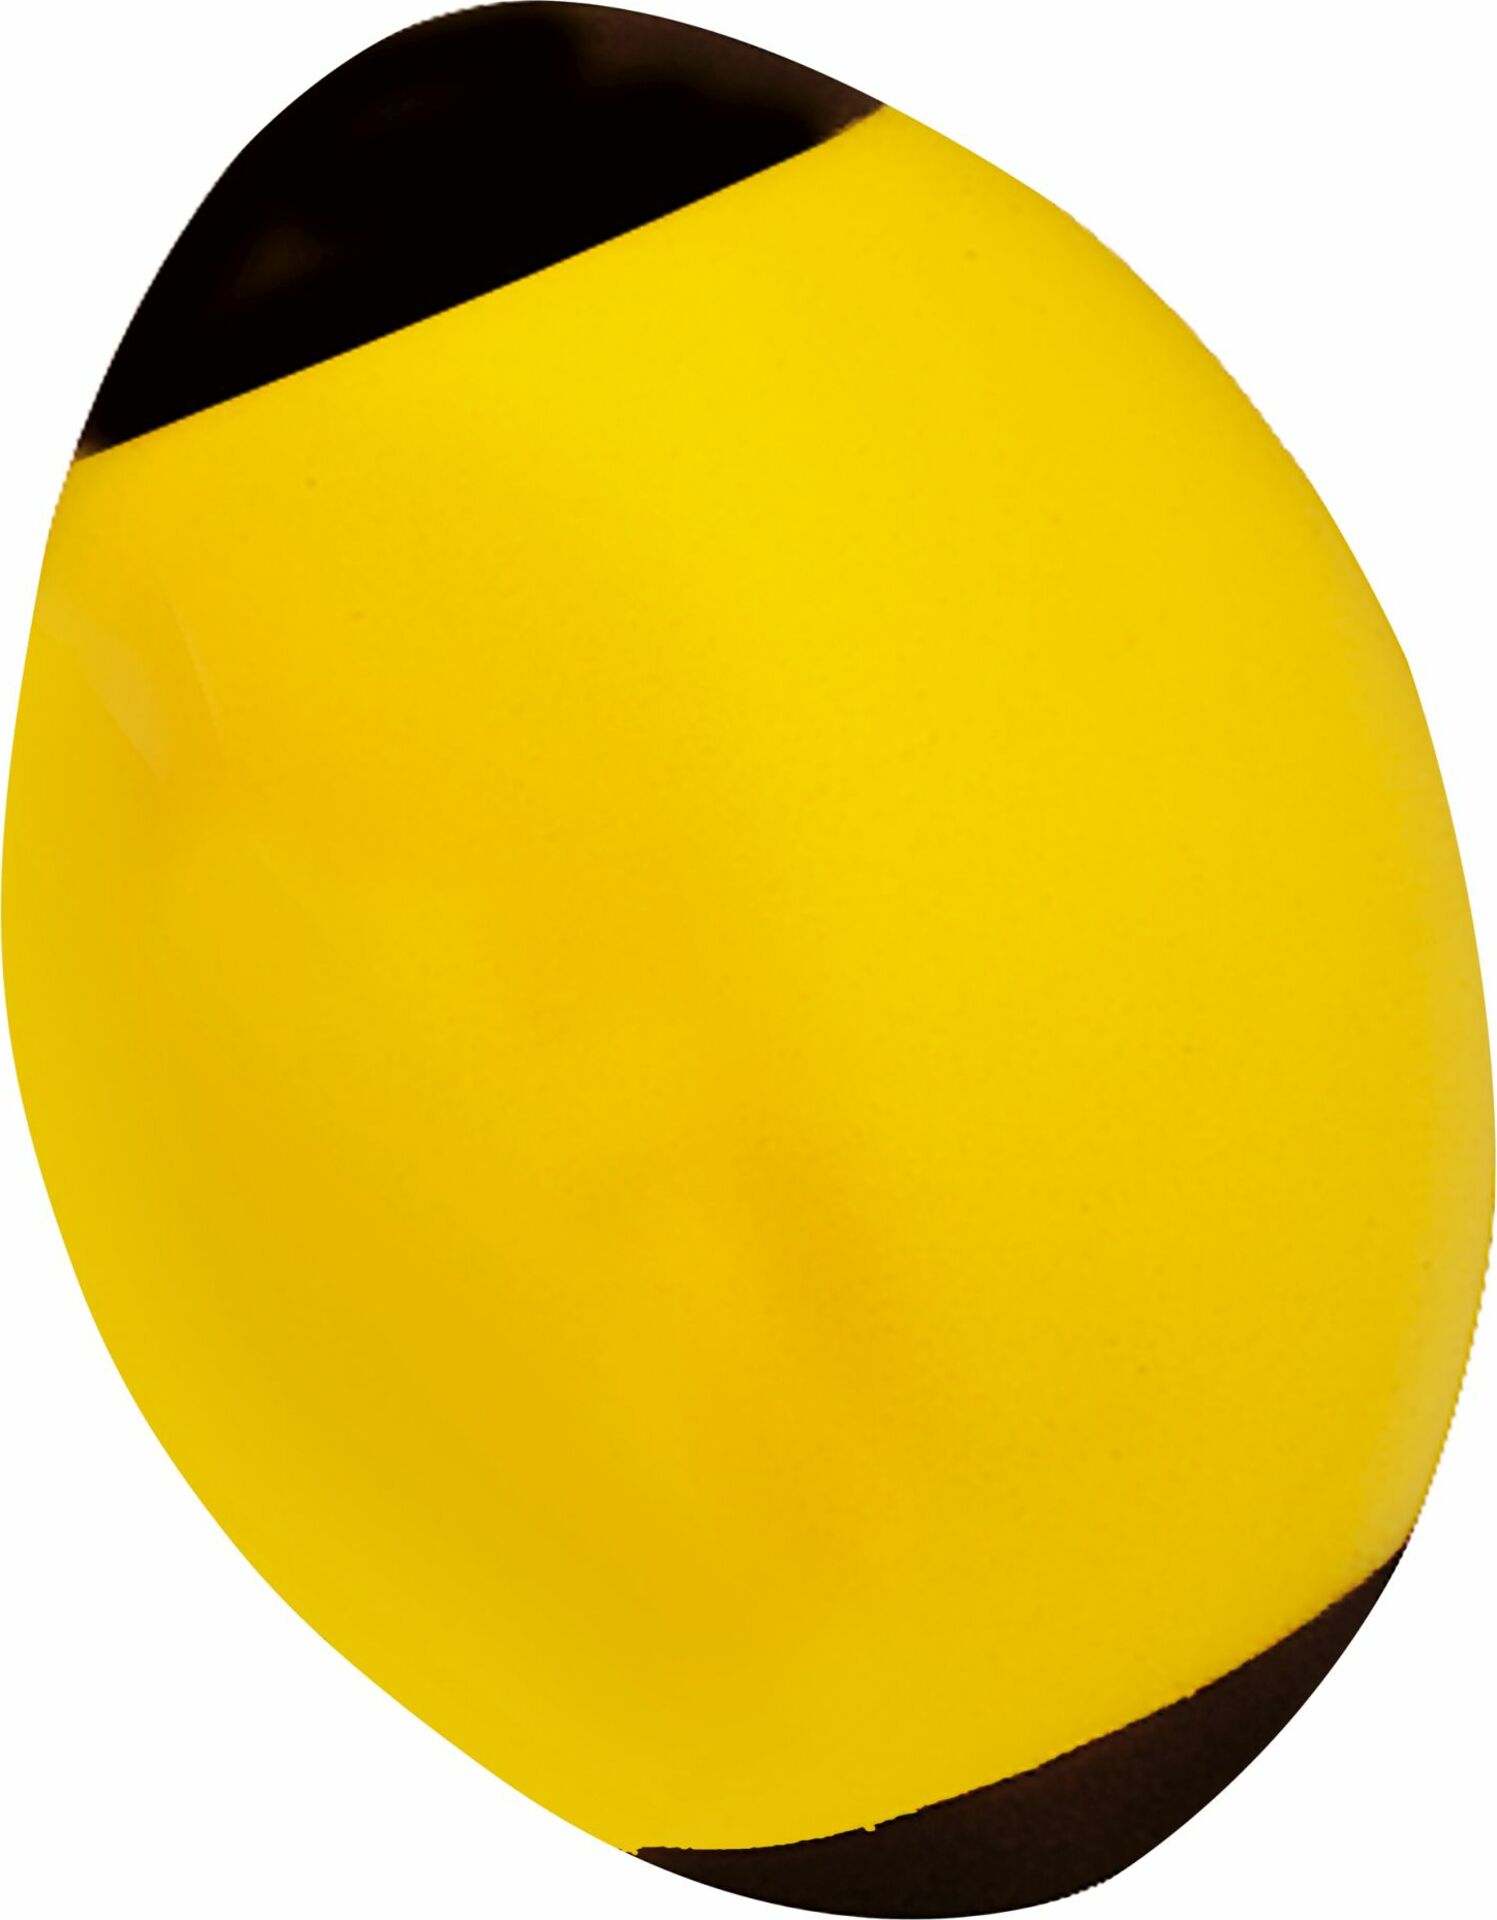 Androni Americký fotbalový míč měkký - průměr 24 cm, žlutý